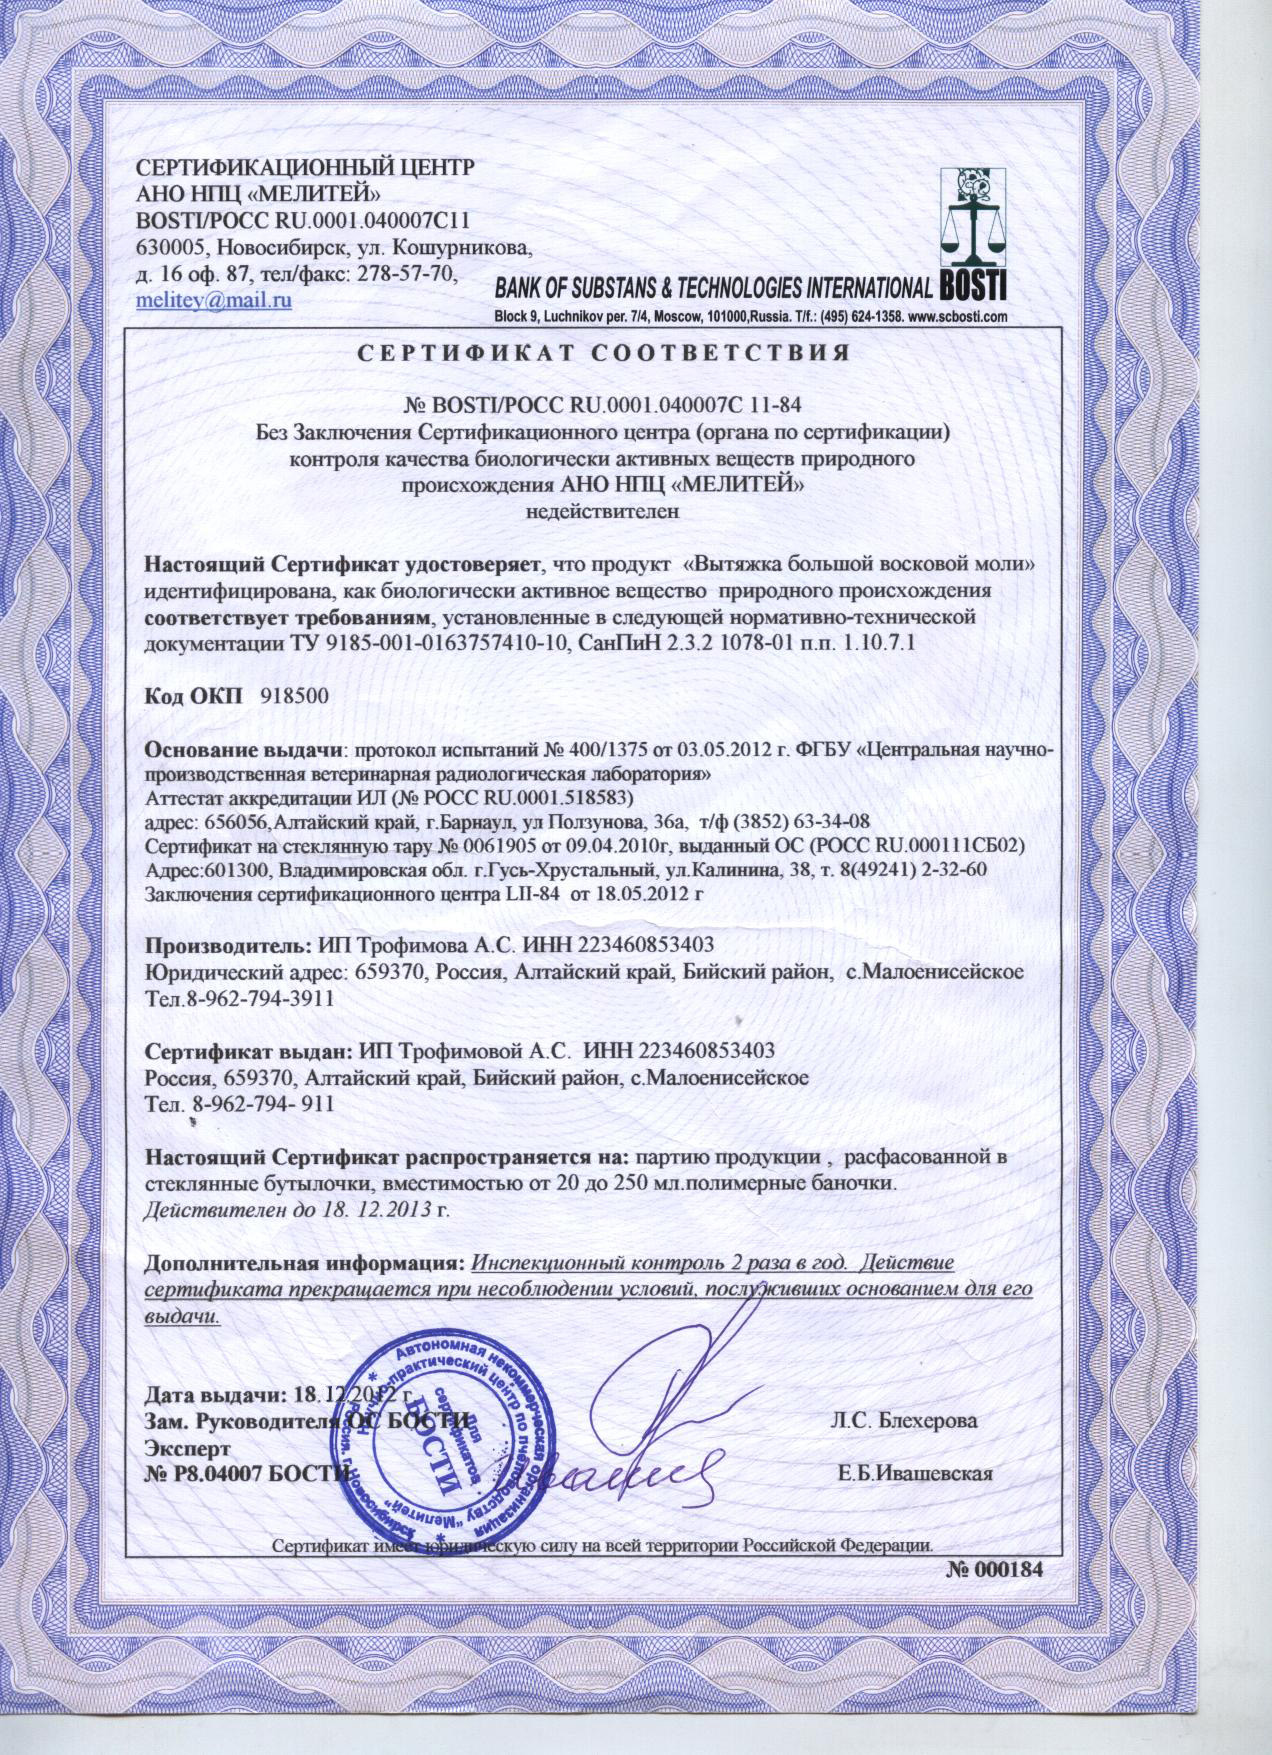 Сертификат соответствия Галерия мелонелла